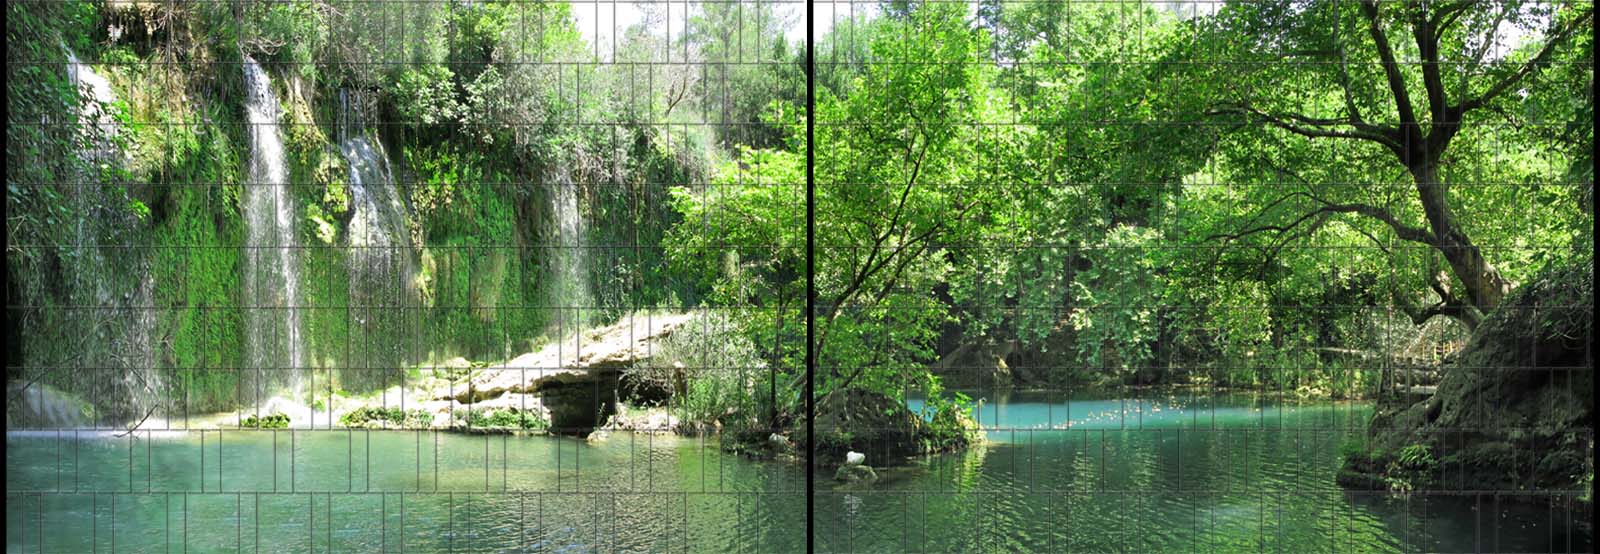 Grotte - Panorama XL bedruckte Sichtschutzstreifen für Doppelstabmattenzaun